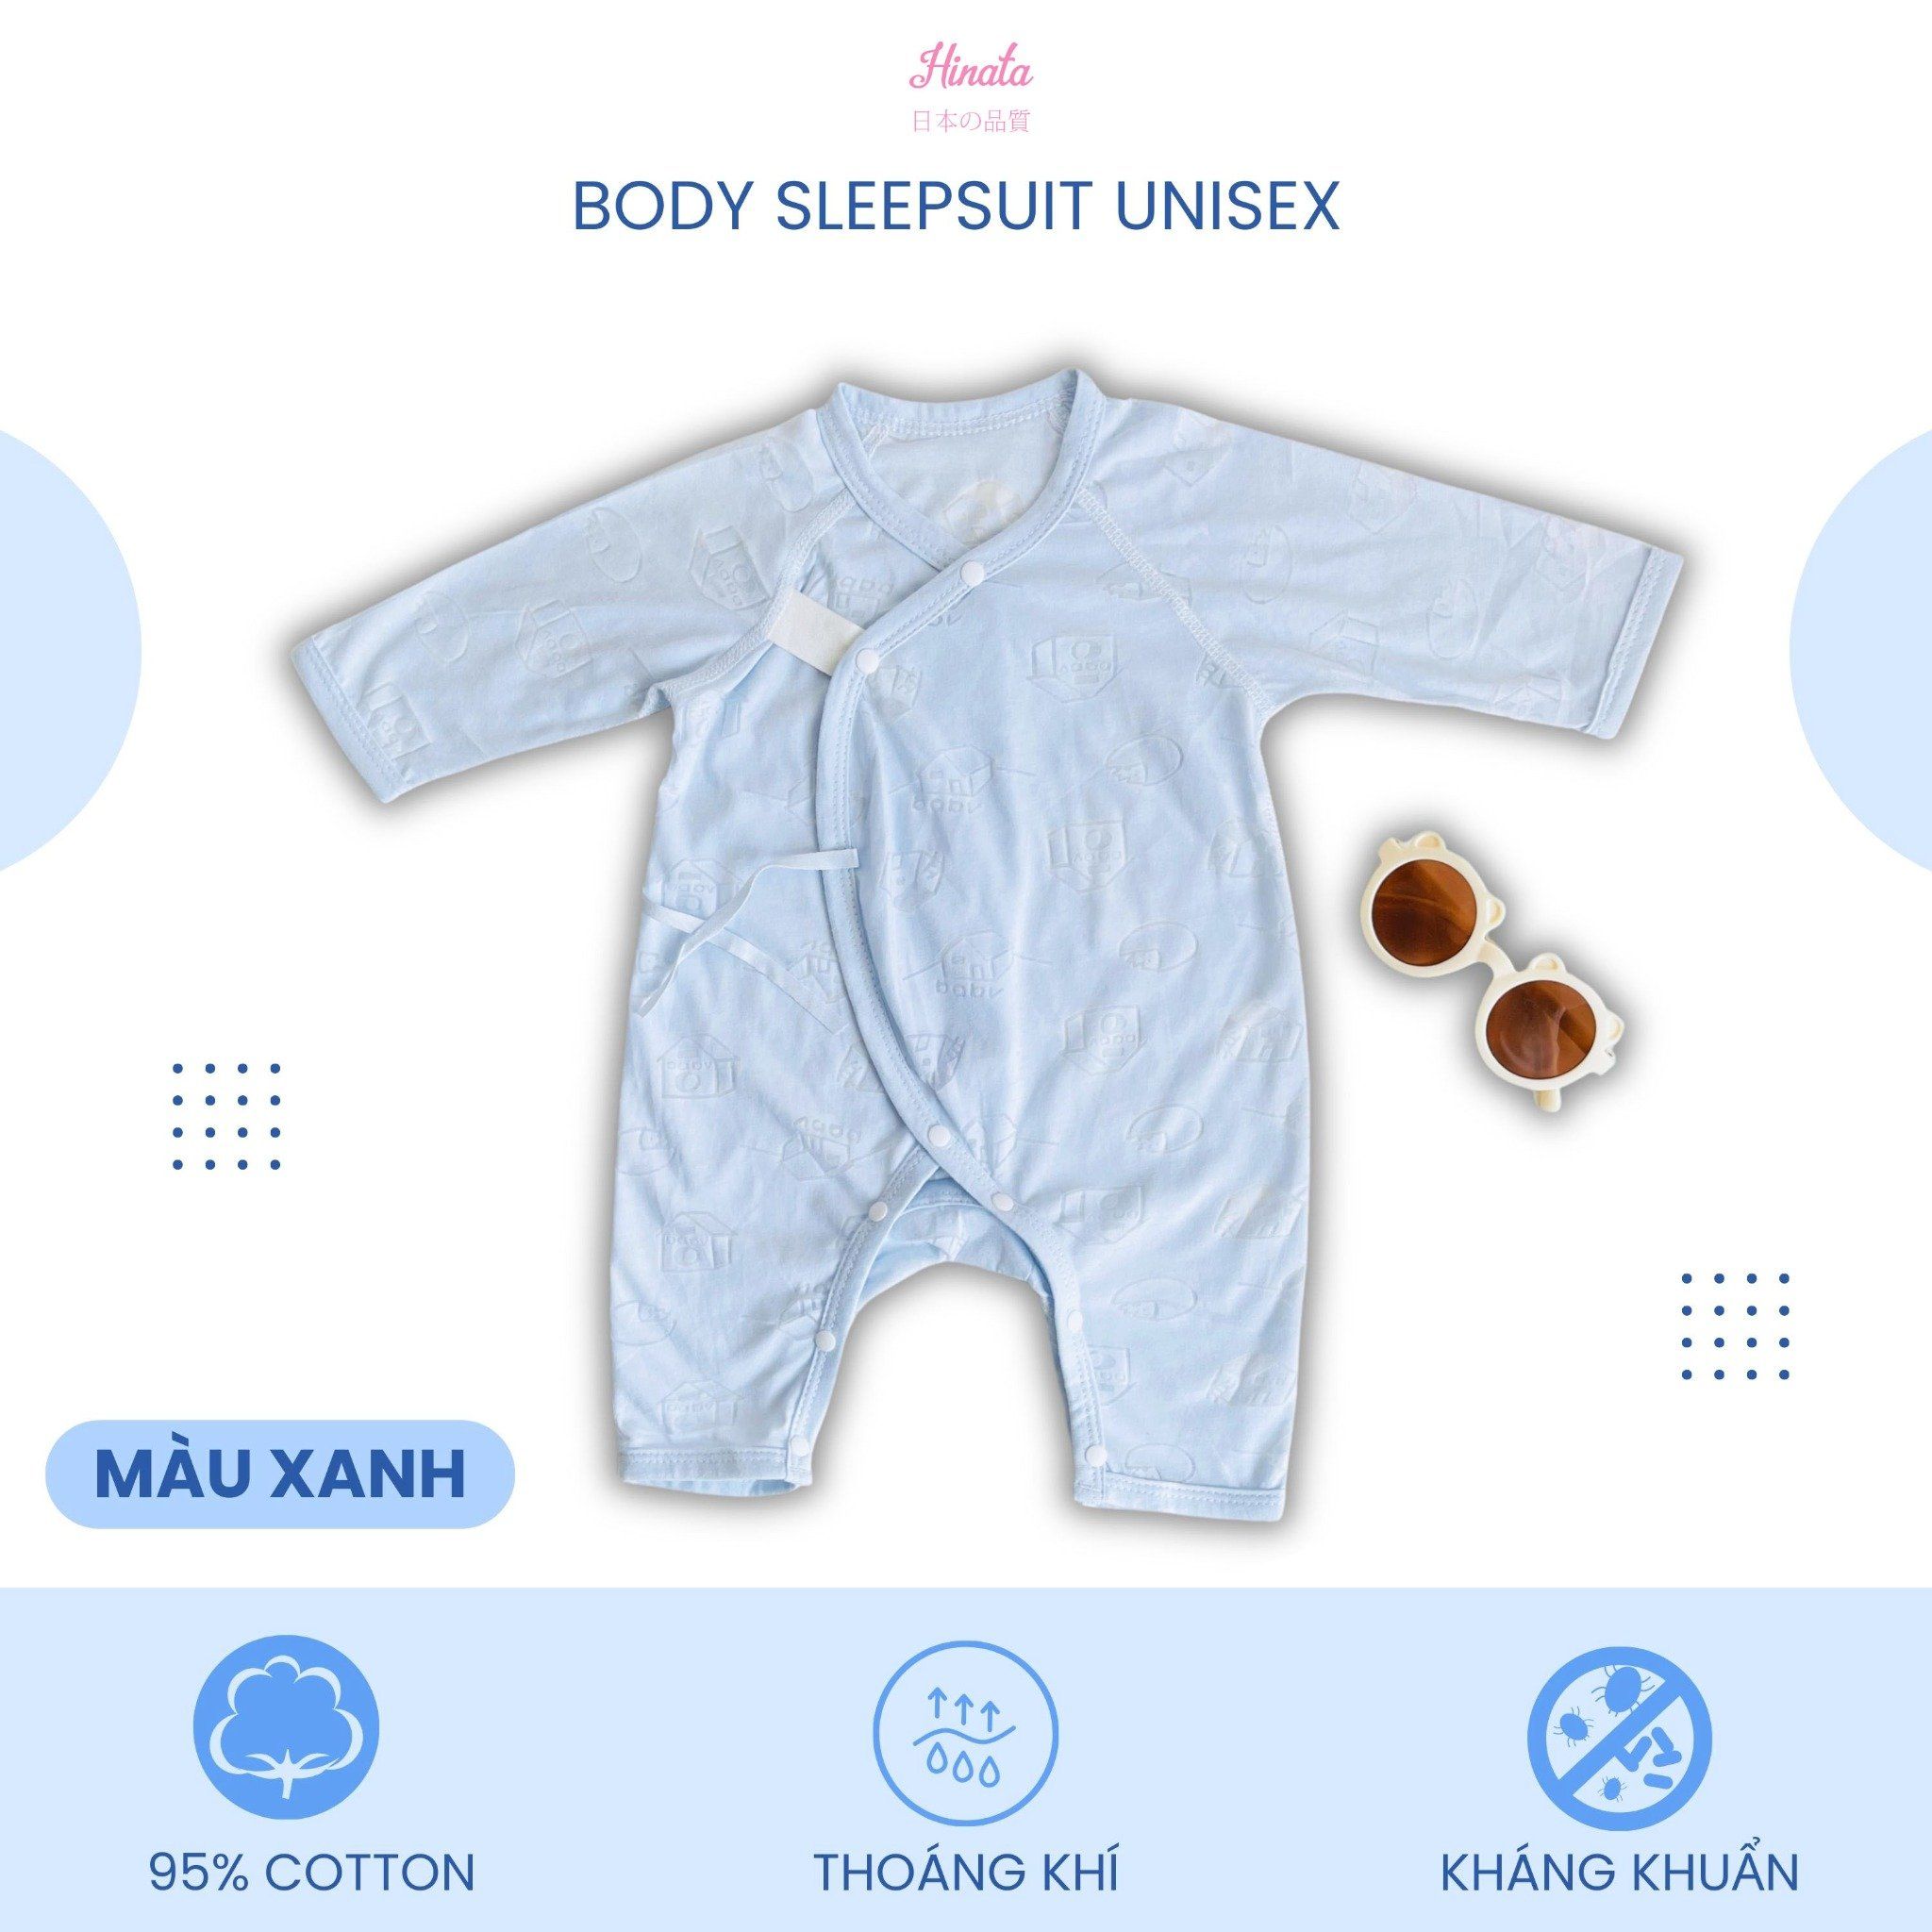  [03 Set] Body Sleepsuit Unisex Hinata  BF84 